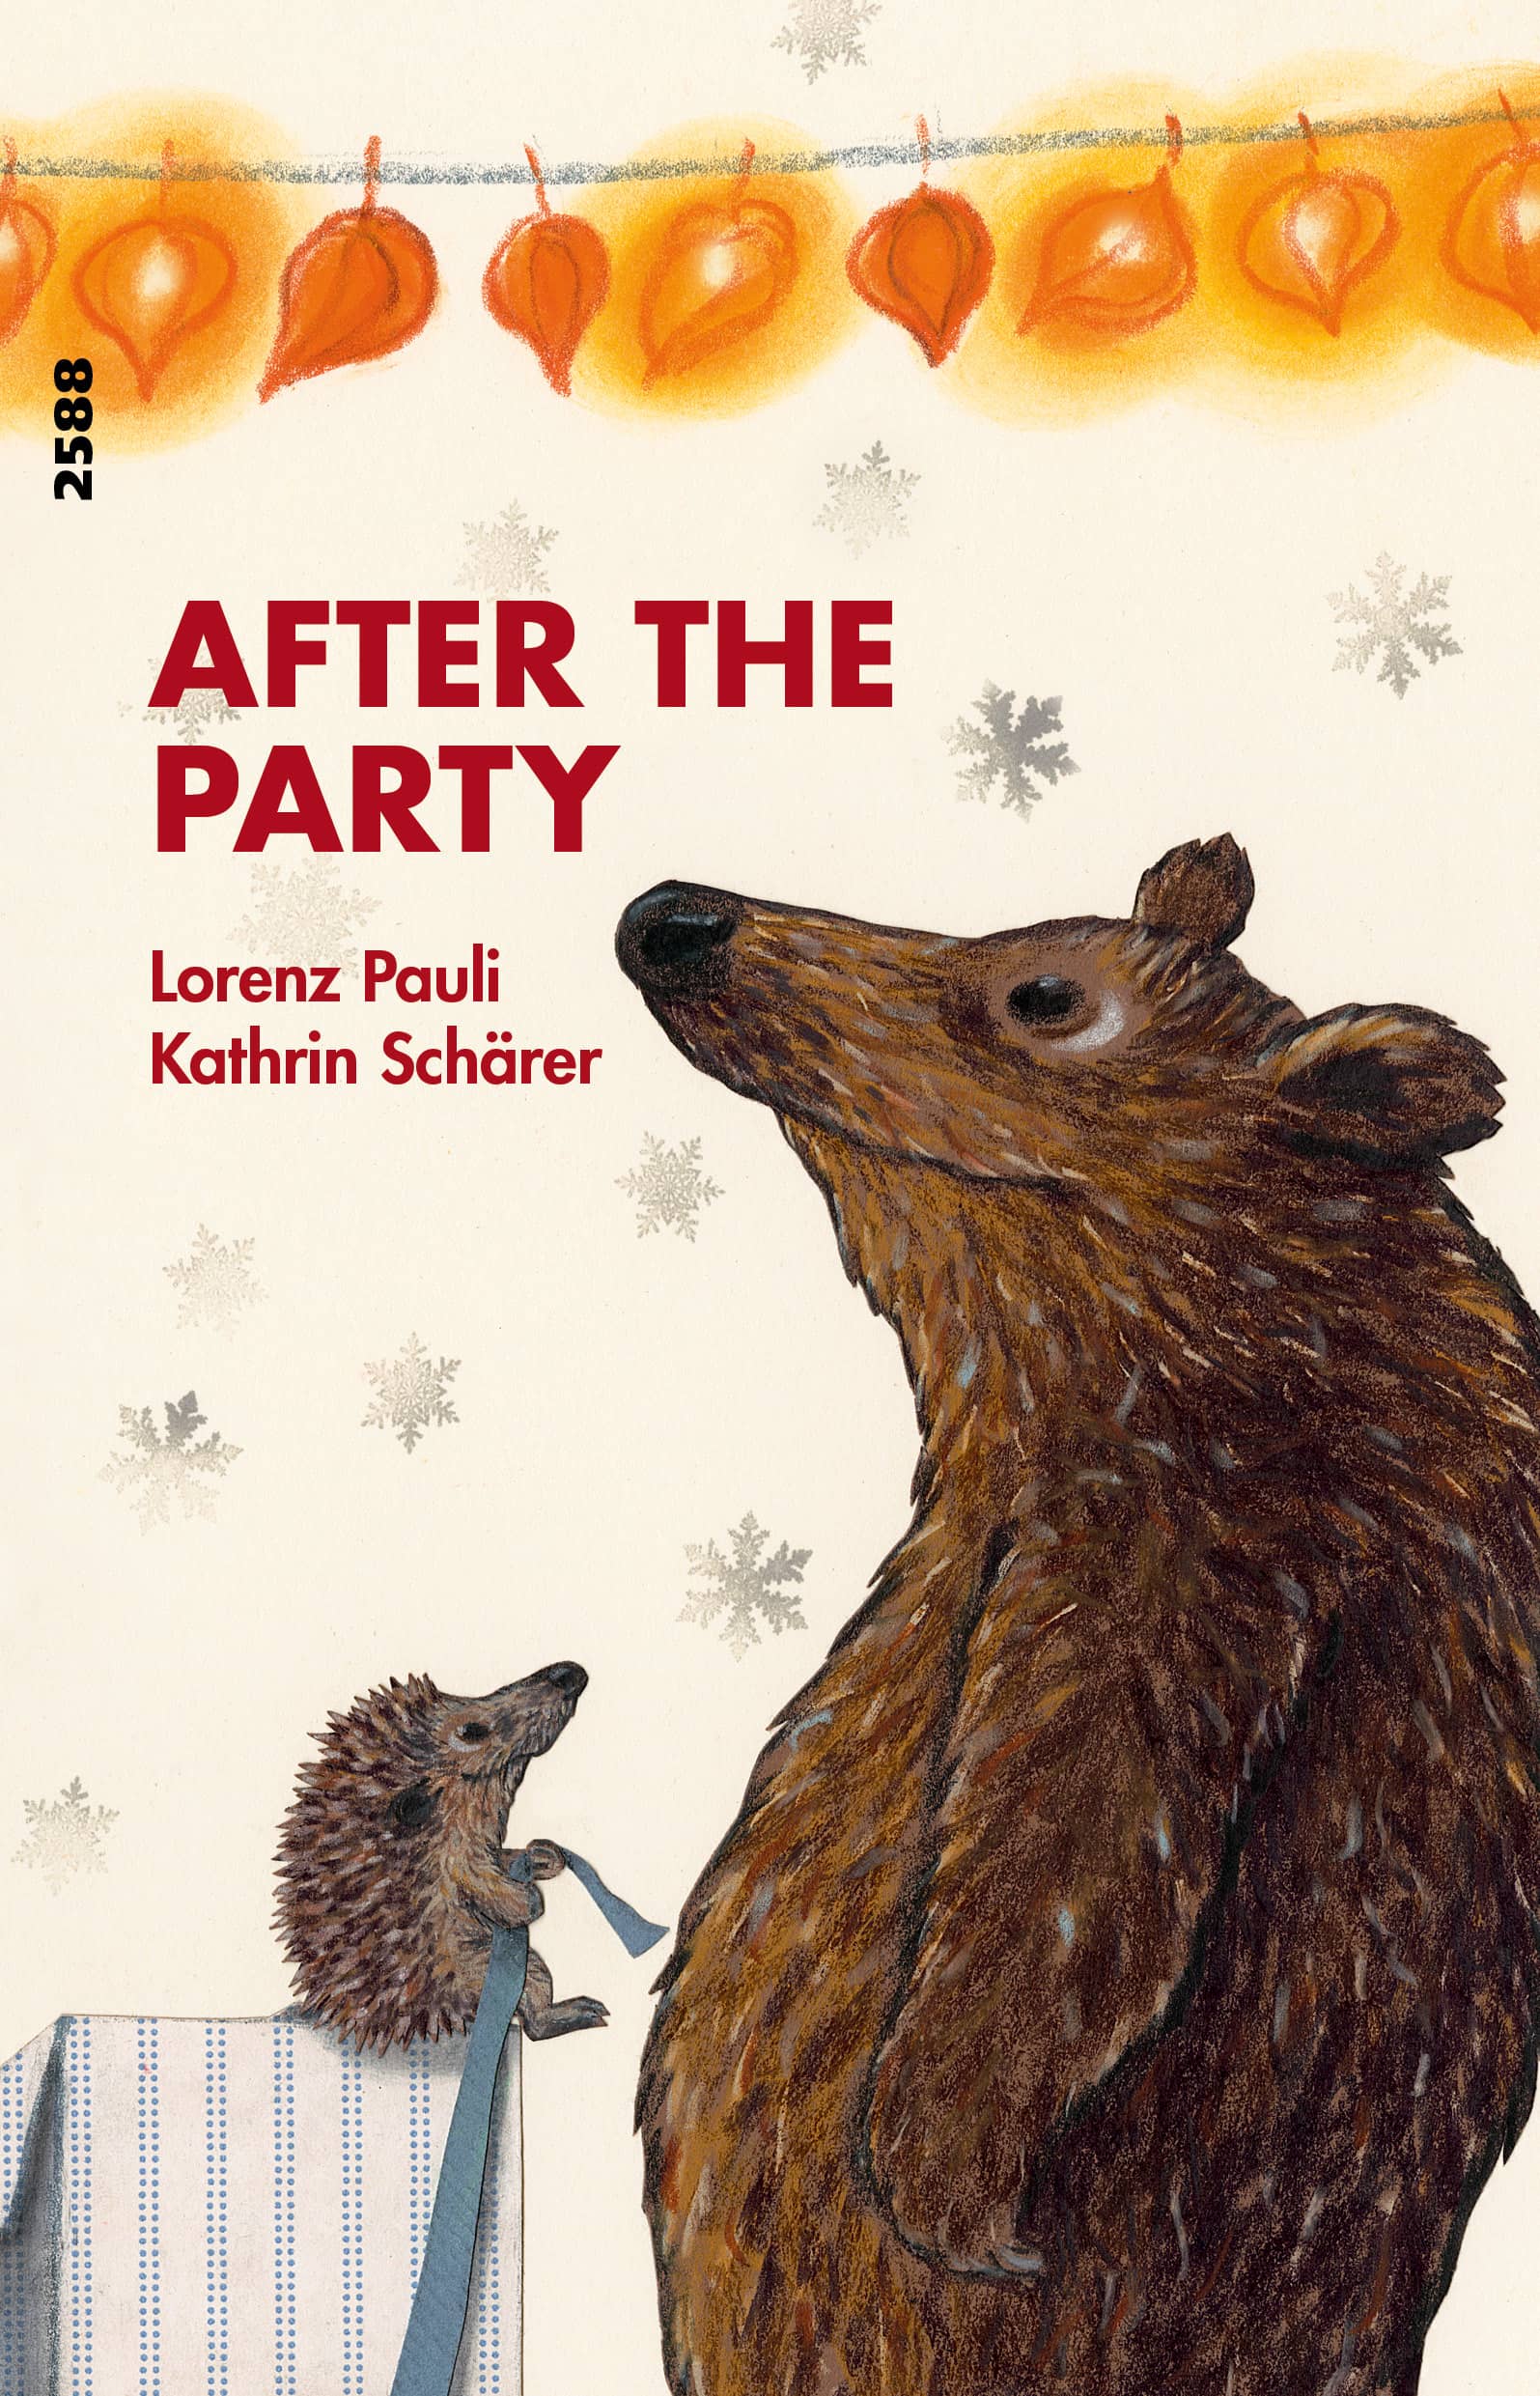 After the Party, ein Kinderbuch von Lorenz Pauli, Illustration von Kathrin Schaerer, SJW Verlag, Monate, Jahreszeiten